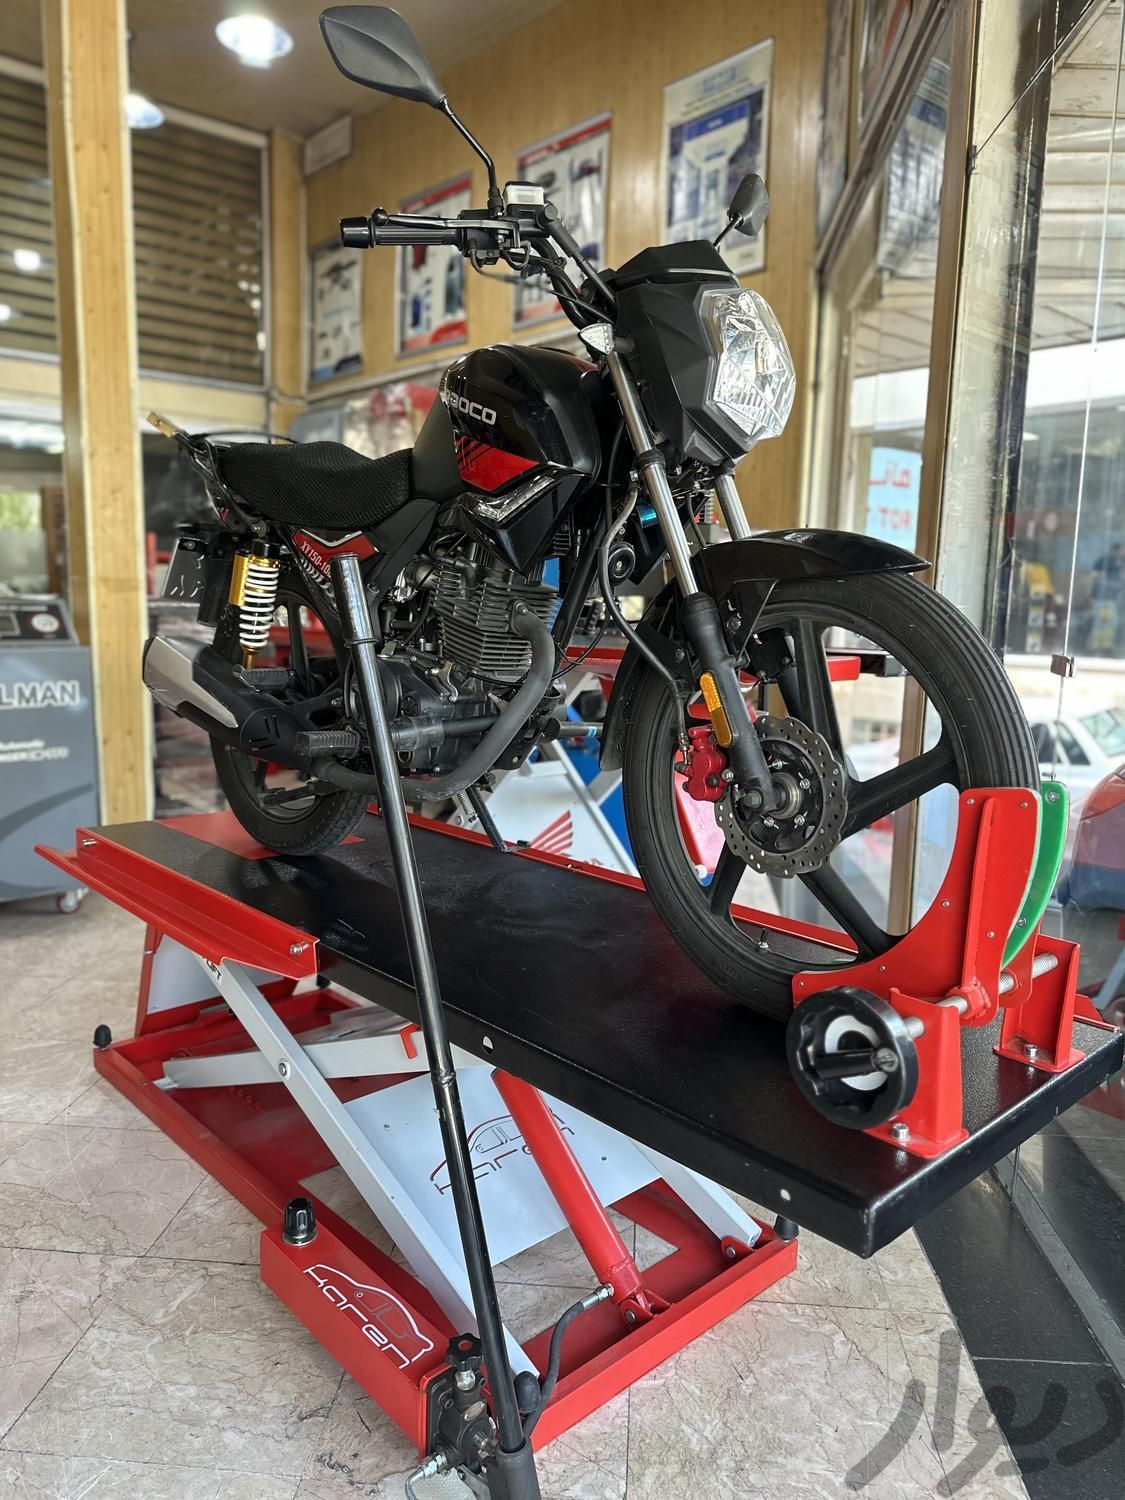 میز بالابر موتور ، جک قیچی بالابر موتور سیکلت|فروشگاه و مغازه|تهران, اسکندری|دیوار